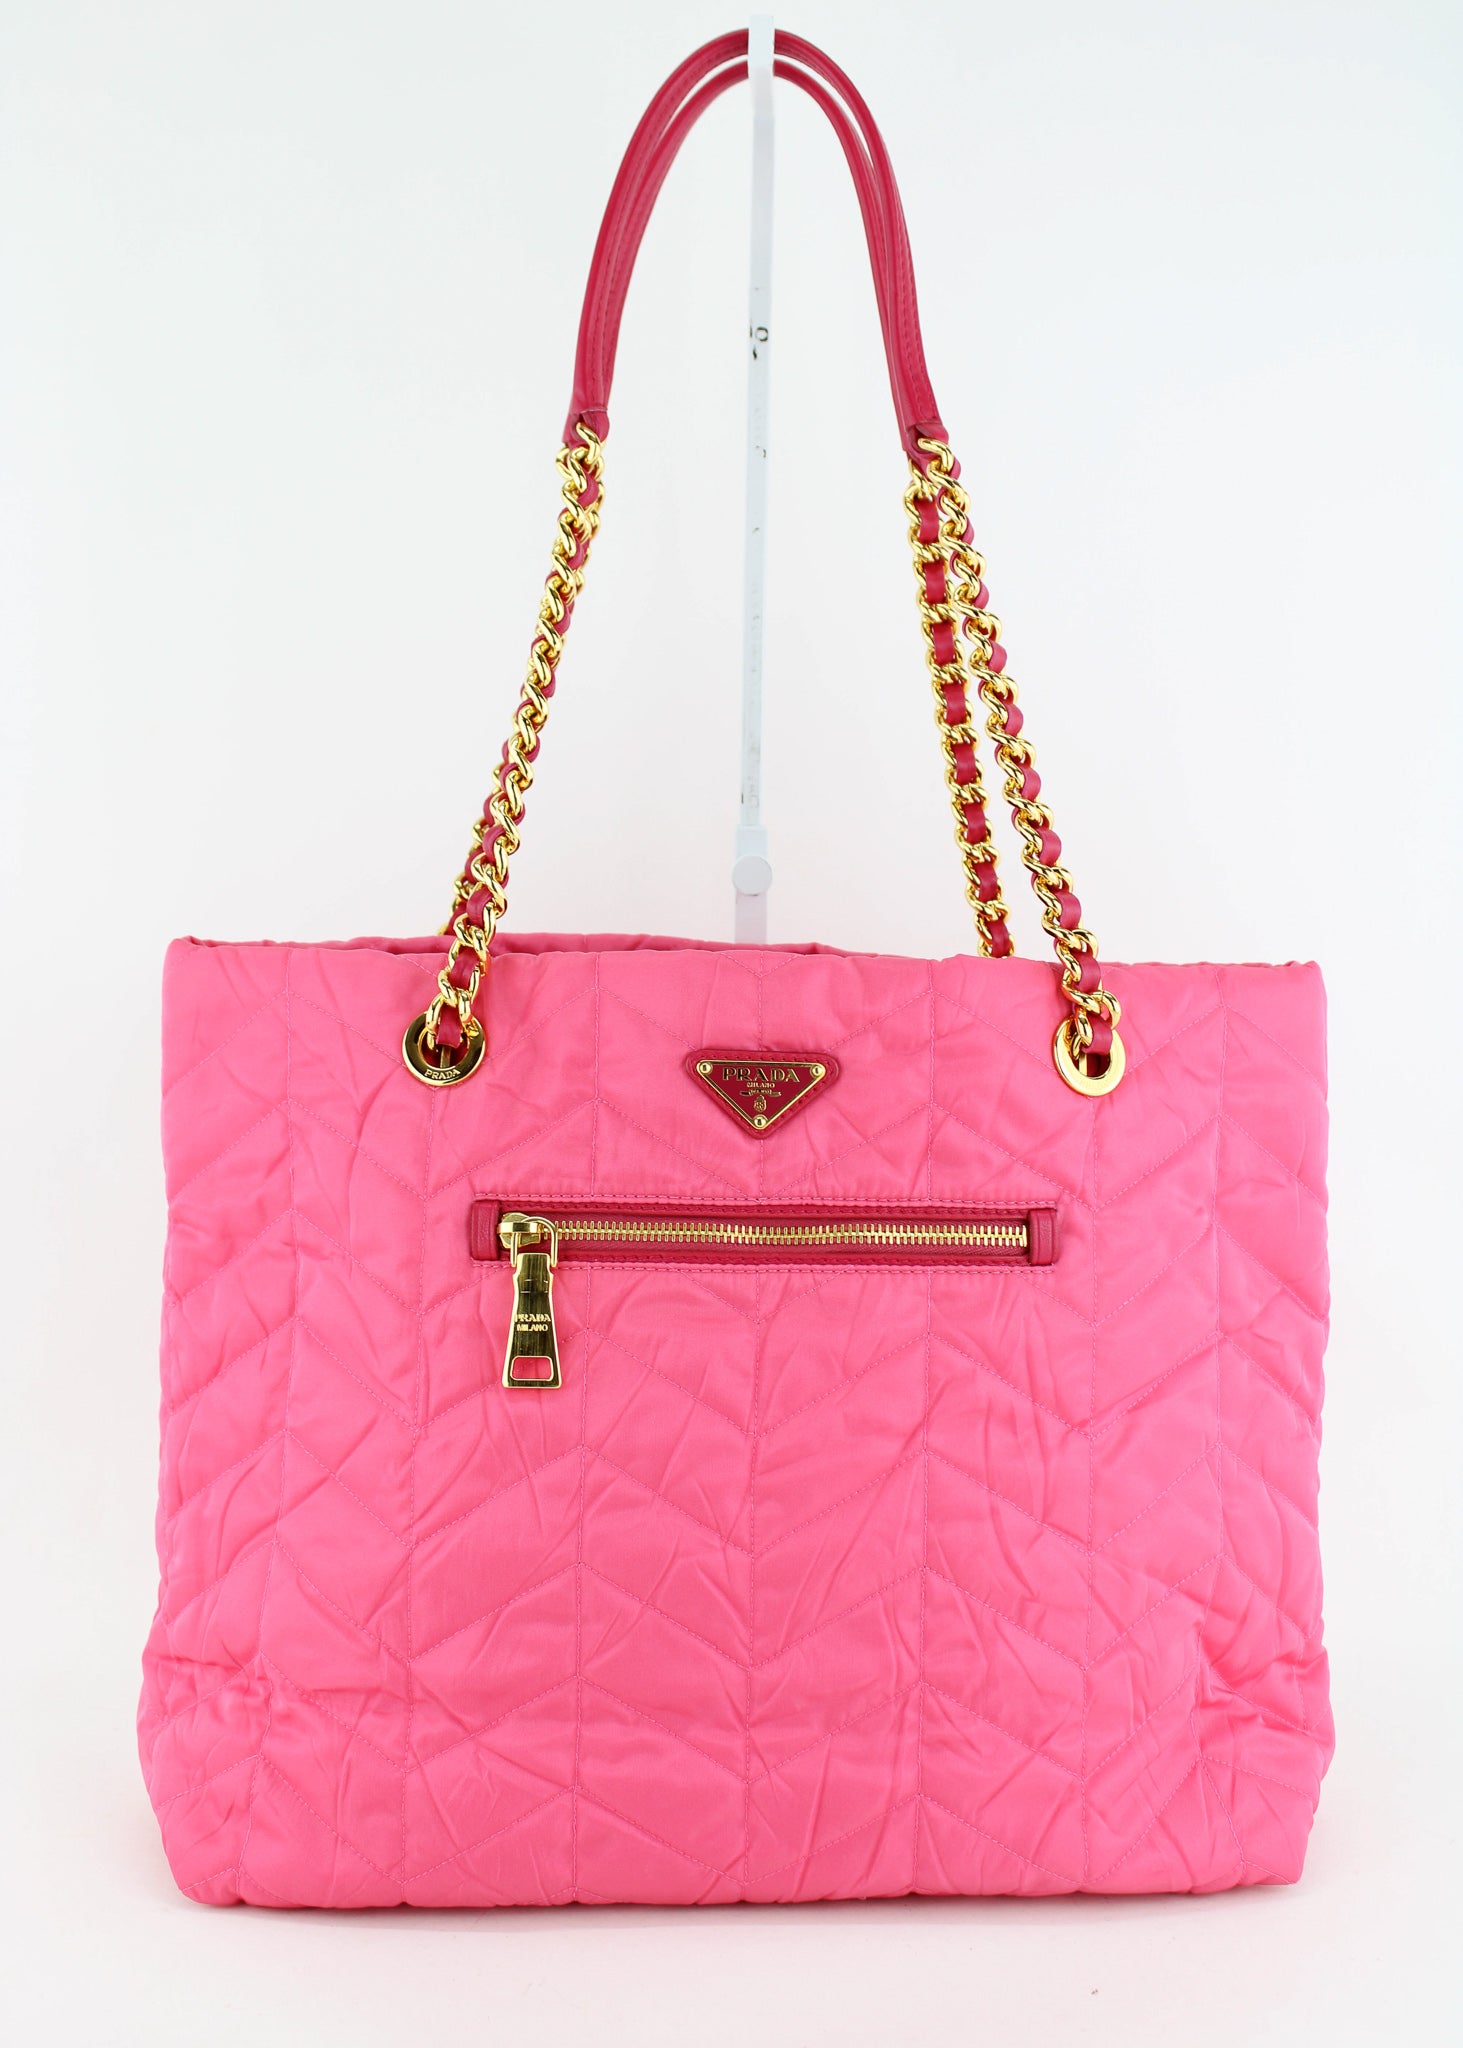 Prada, Bags, Auth Prada Nylon Hot Pink Crossbody Bag